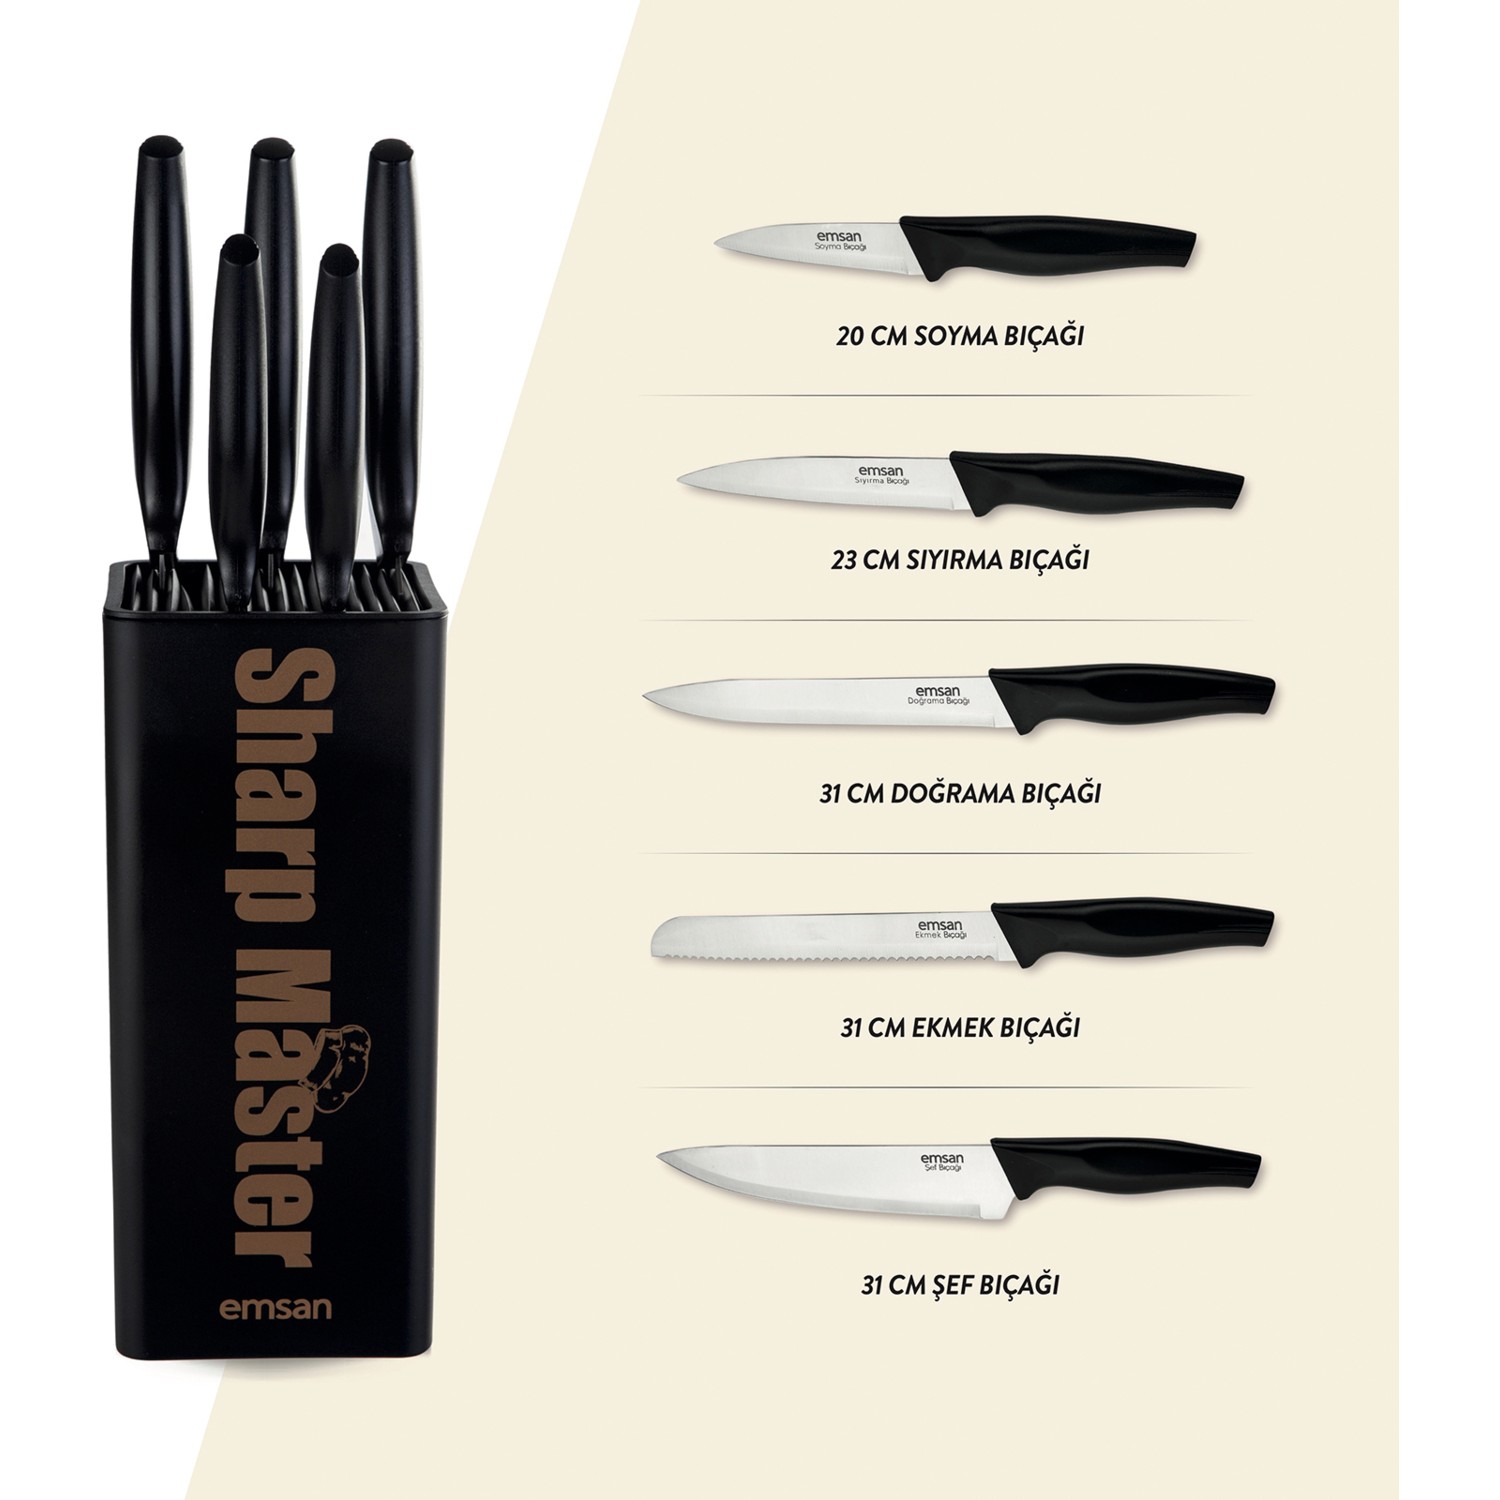 ست چاقوی آشپزخانه 6 پارچه امسان مدل Emsan Sharp Master